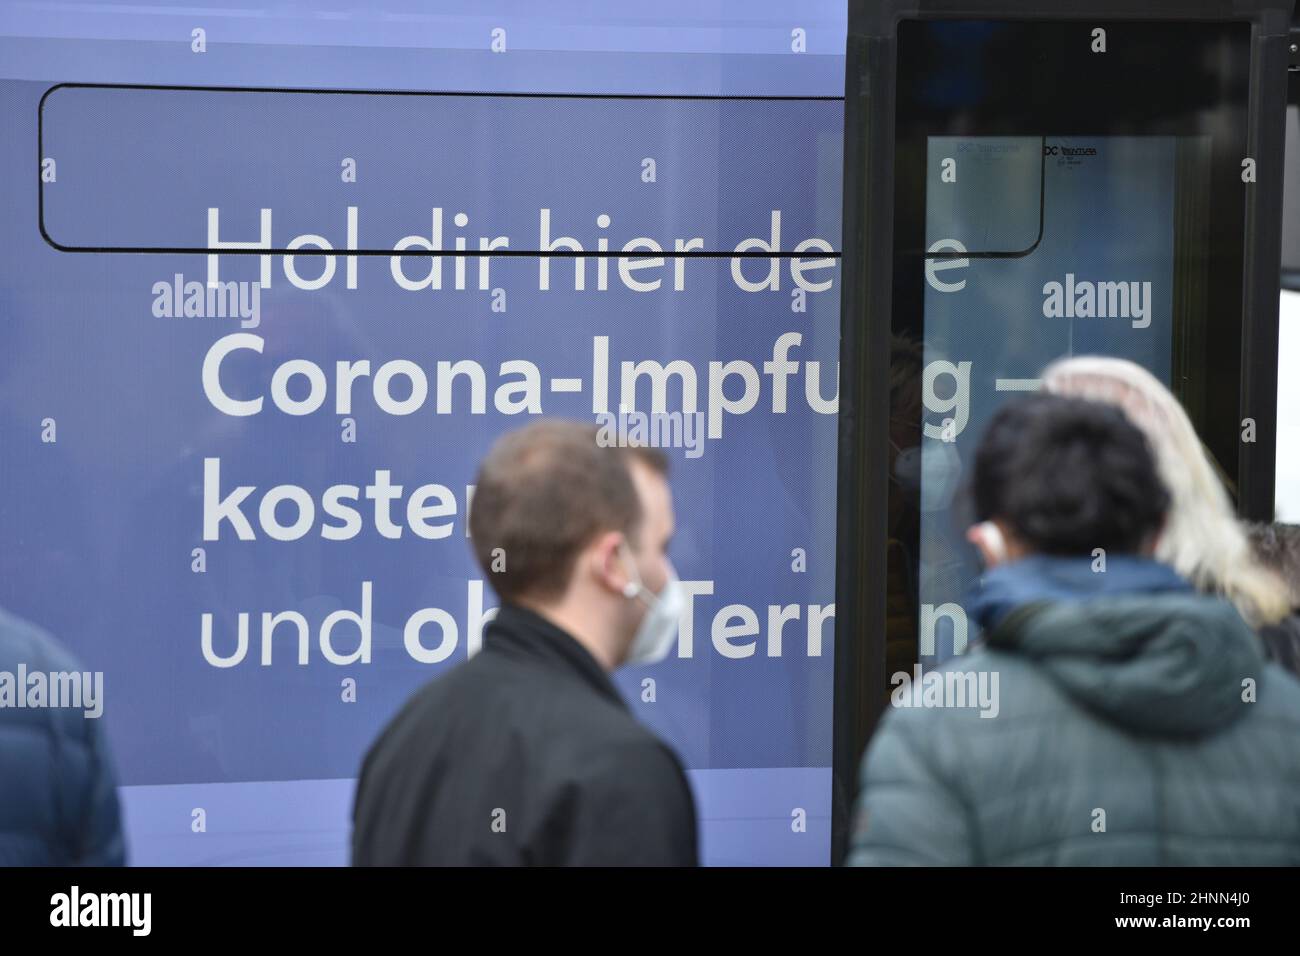 Viele Menschen, die eine Corona-Impfung ahben wollen, vor einem Impfbus der Stadt Wien. Österreich, Europa - viele Menschen, die sich vor einem Impfbus aus der Stadt Wien eine Corona-Impfung wünschen. Österreich, Europa Stockfoto